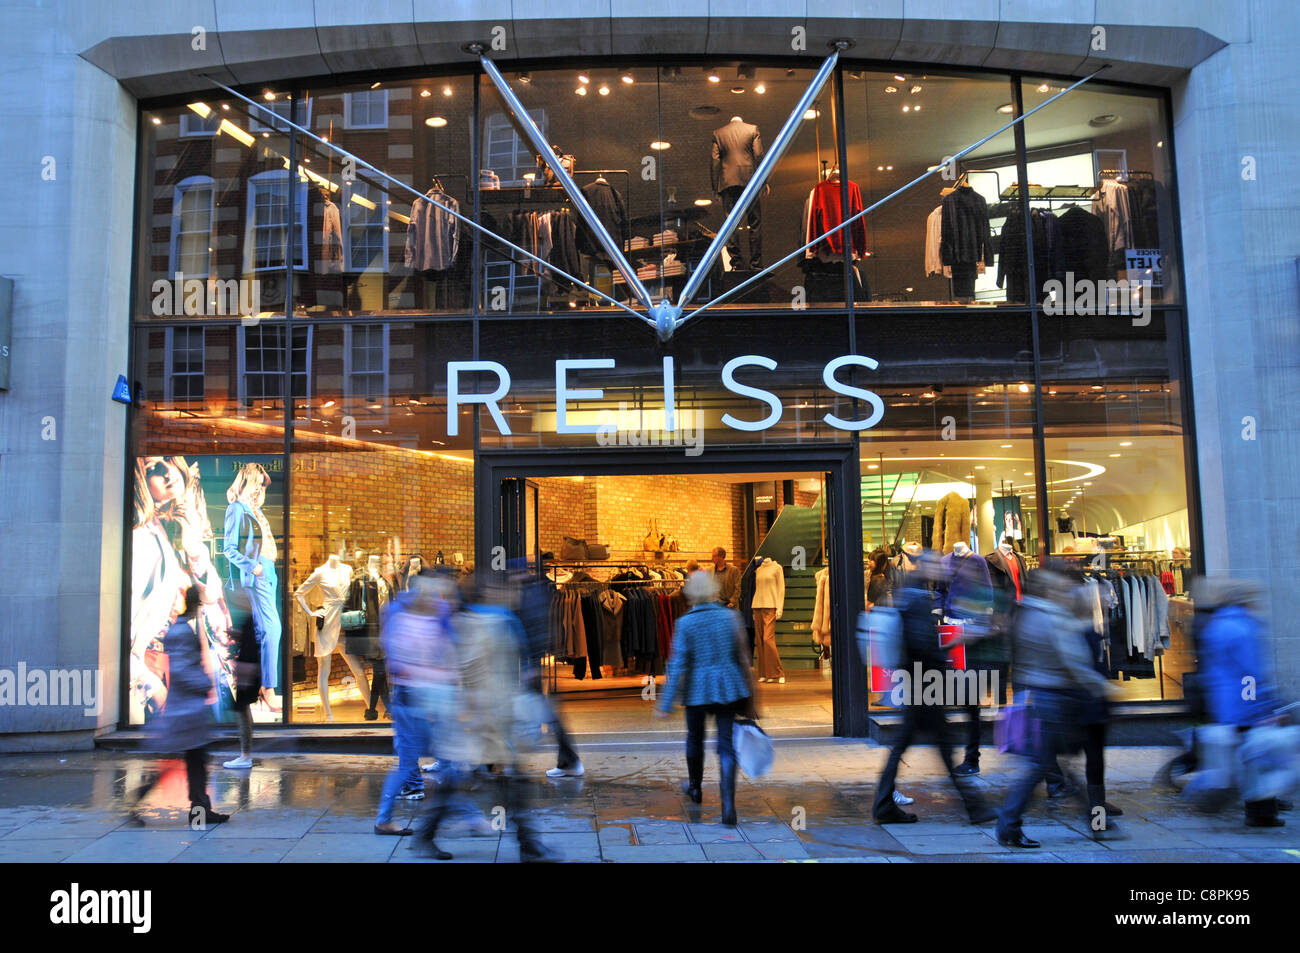 Reiss-Mode Shop Covent Garden Kleidung zu speichern Stockfotografie - Alamy